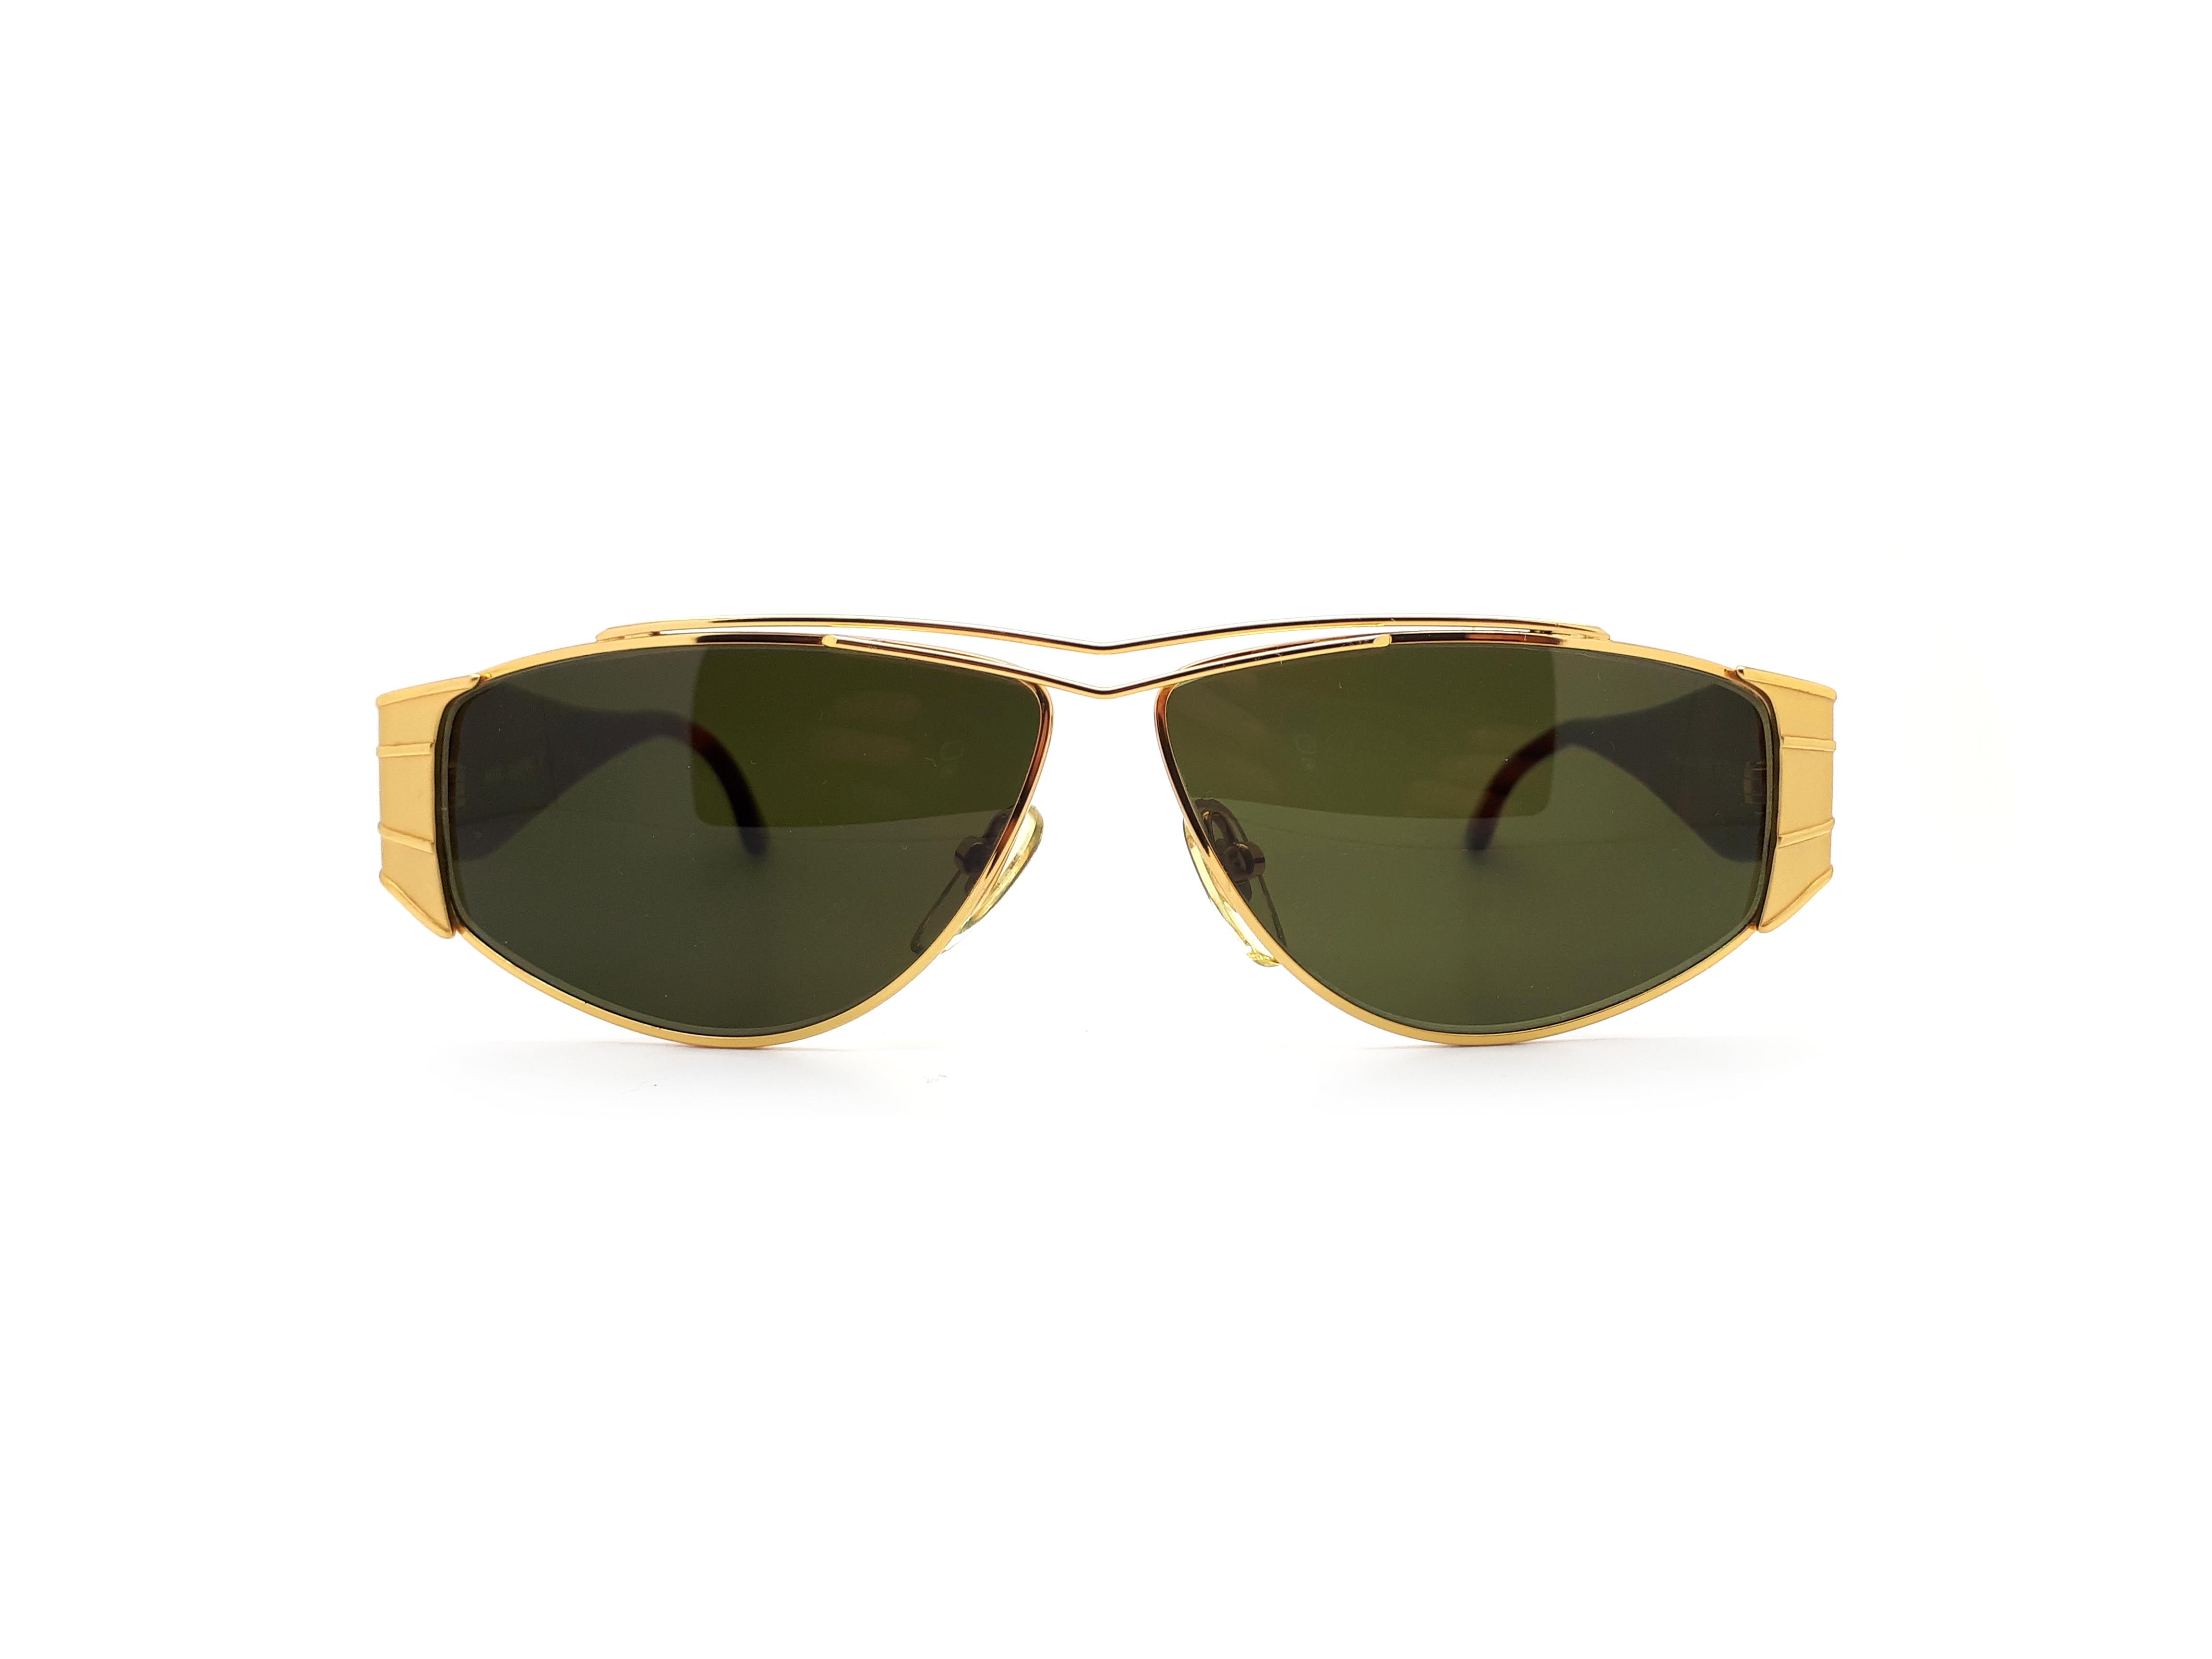 Mario Valentino 66 Vintage Sunglasses – Ed & Sarna Vintage Eyewear